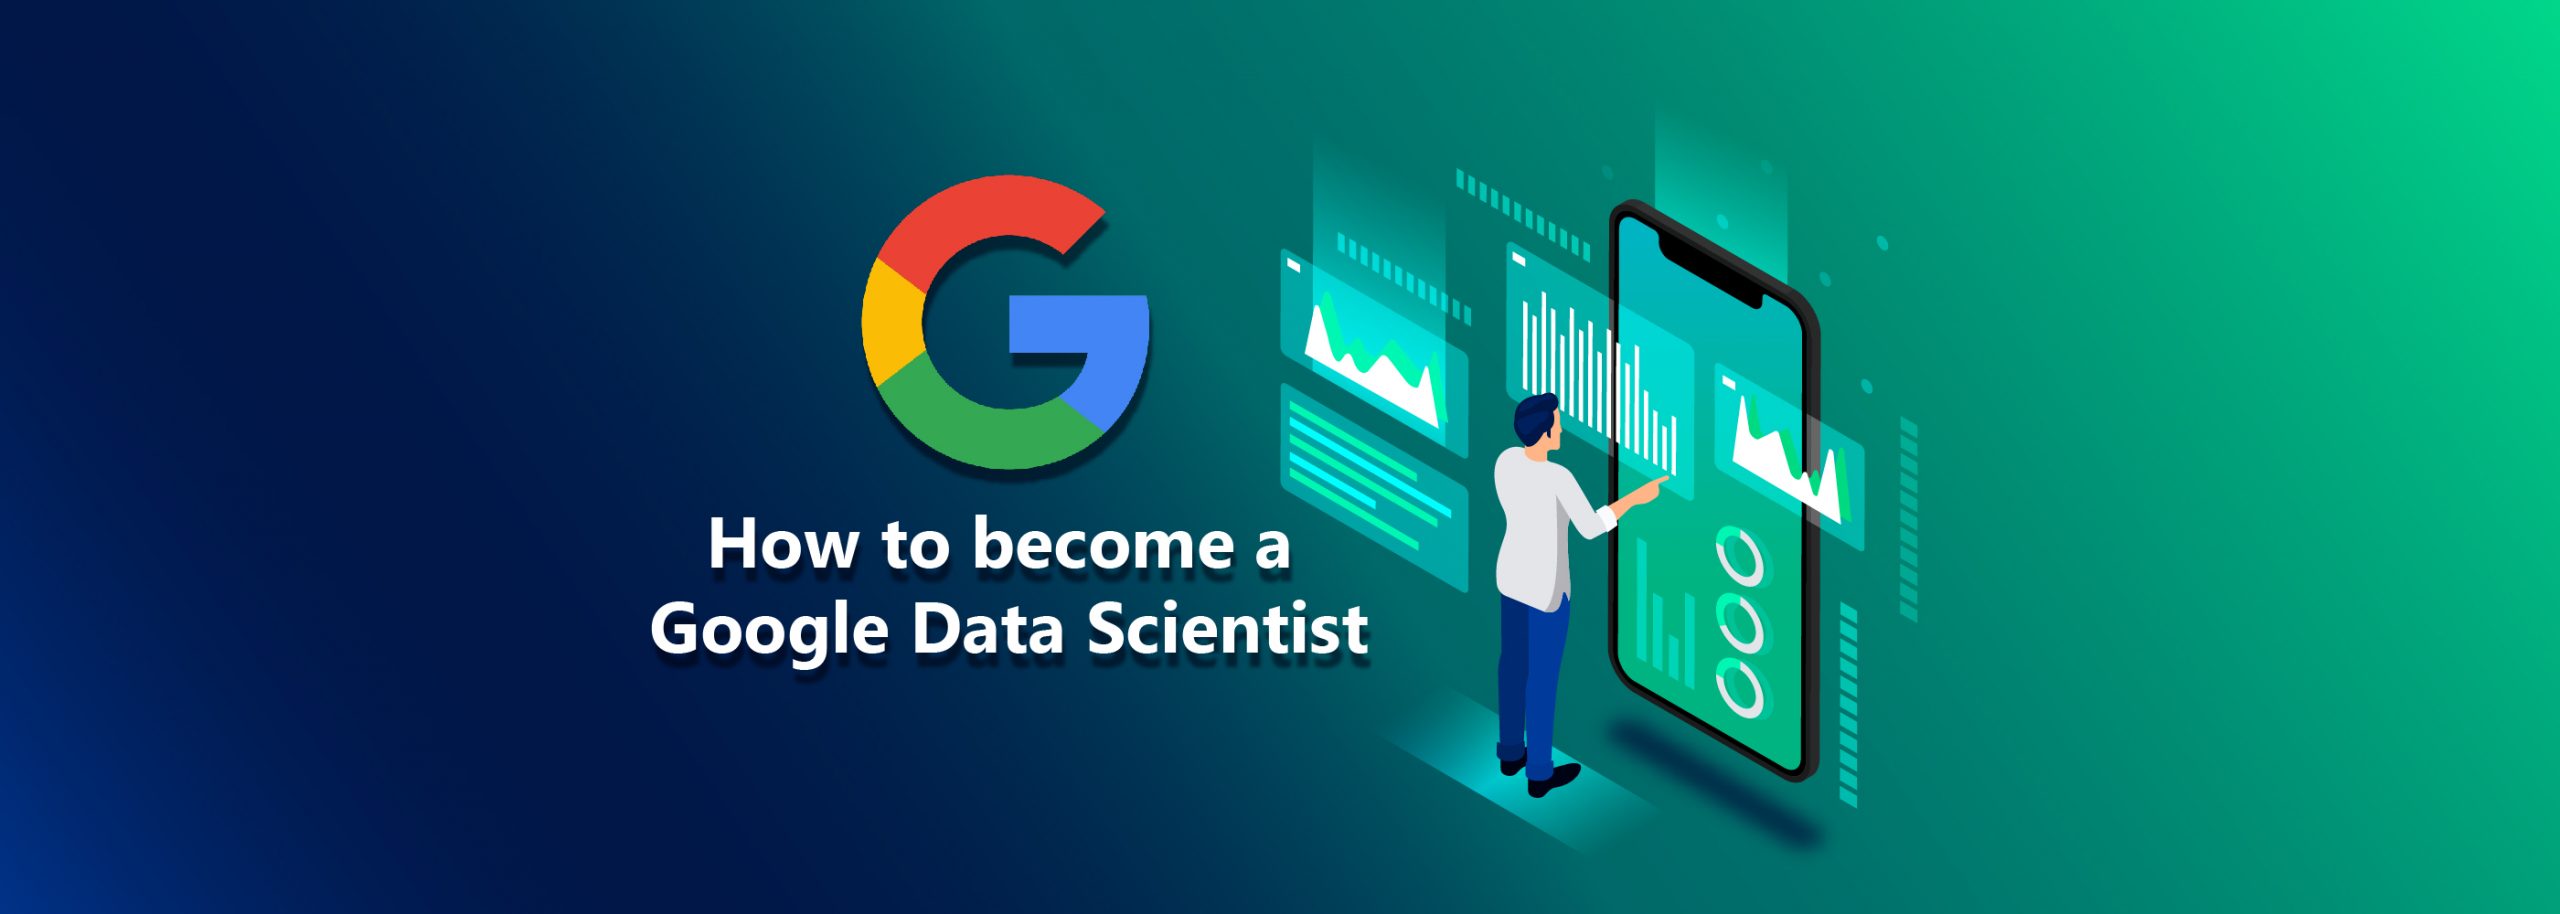 google data scientist